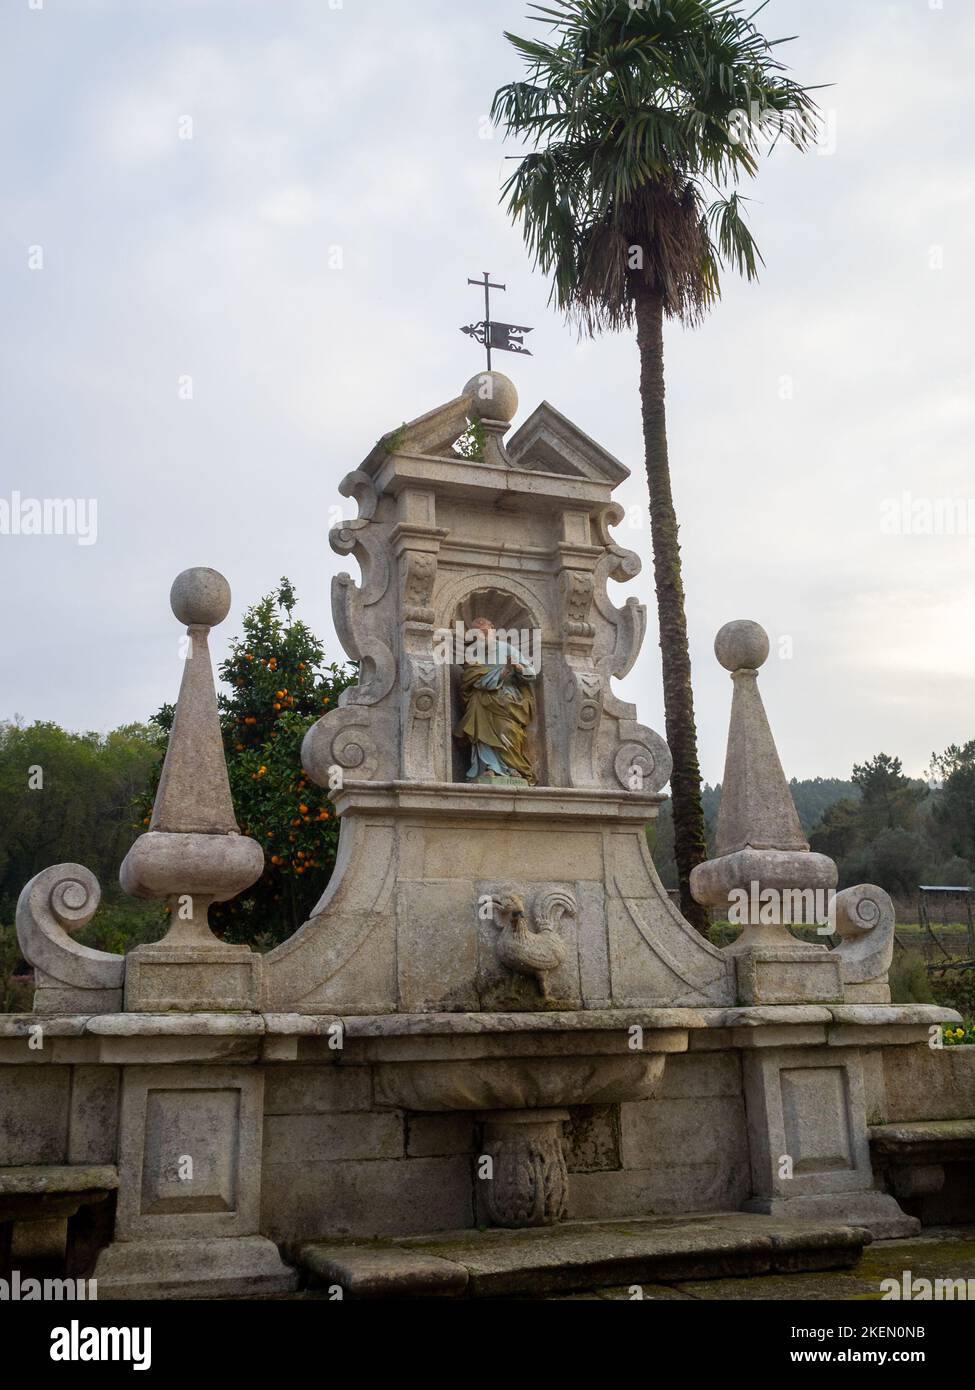 Mosteiro de São Martinho de Tibães park fountain Stock Photo